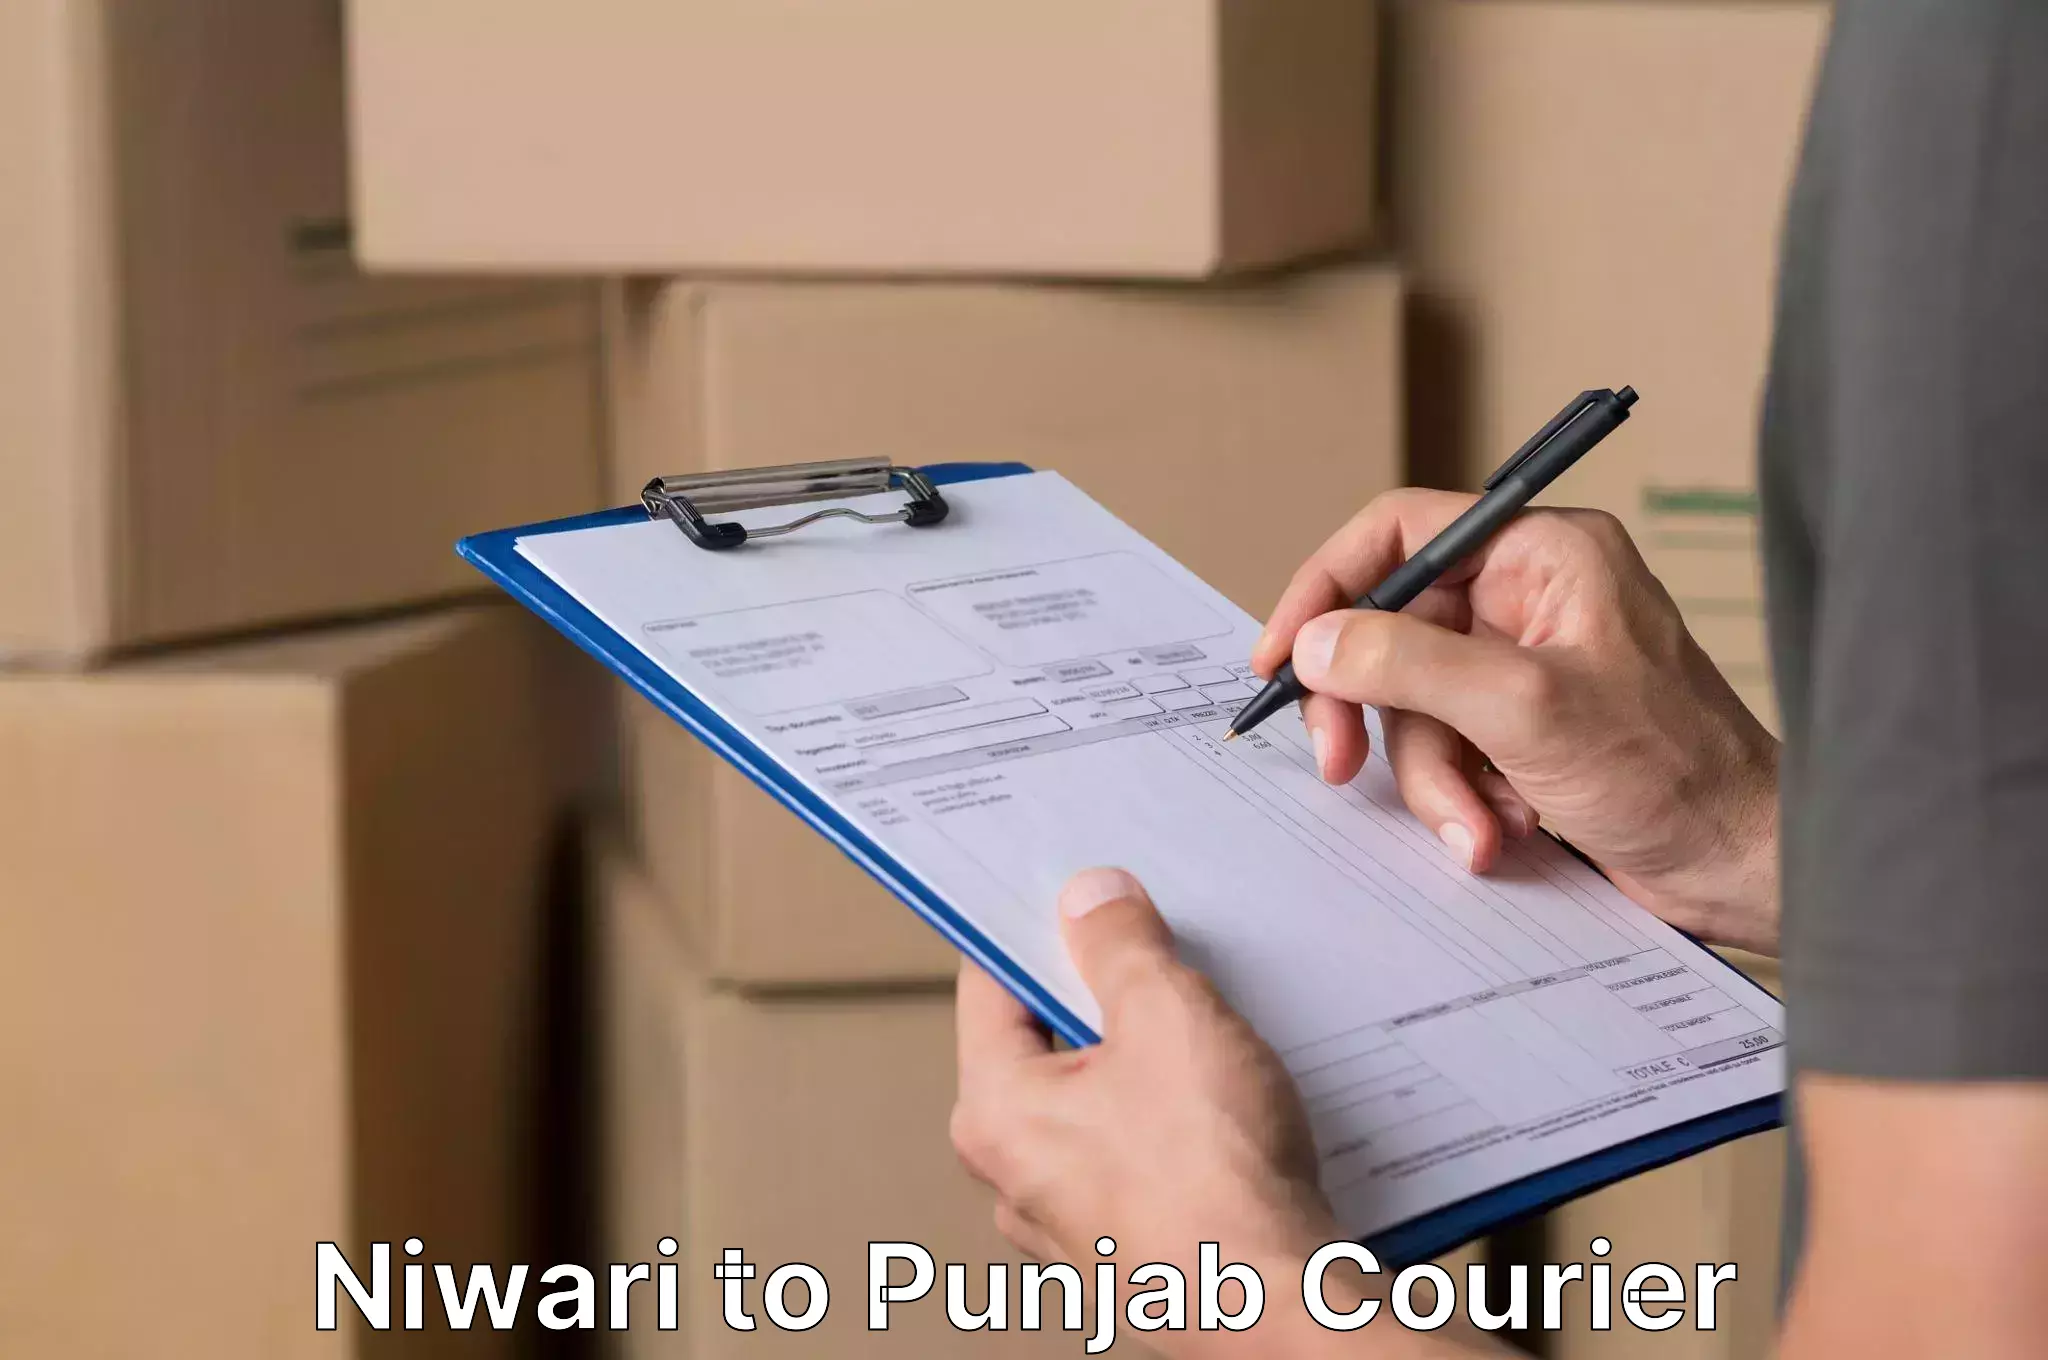 Safe household movers Niwari to Punjab